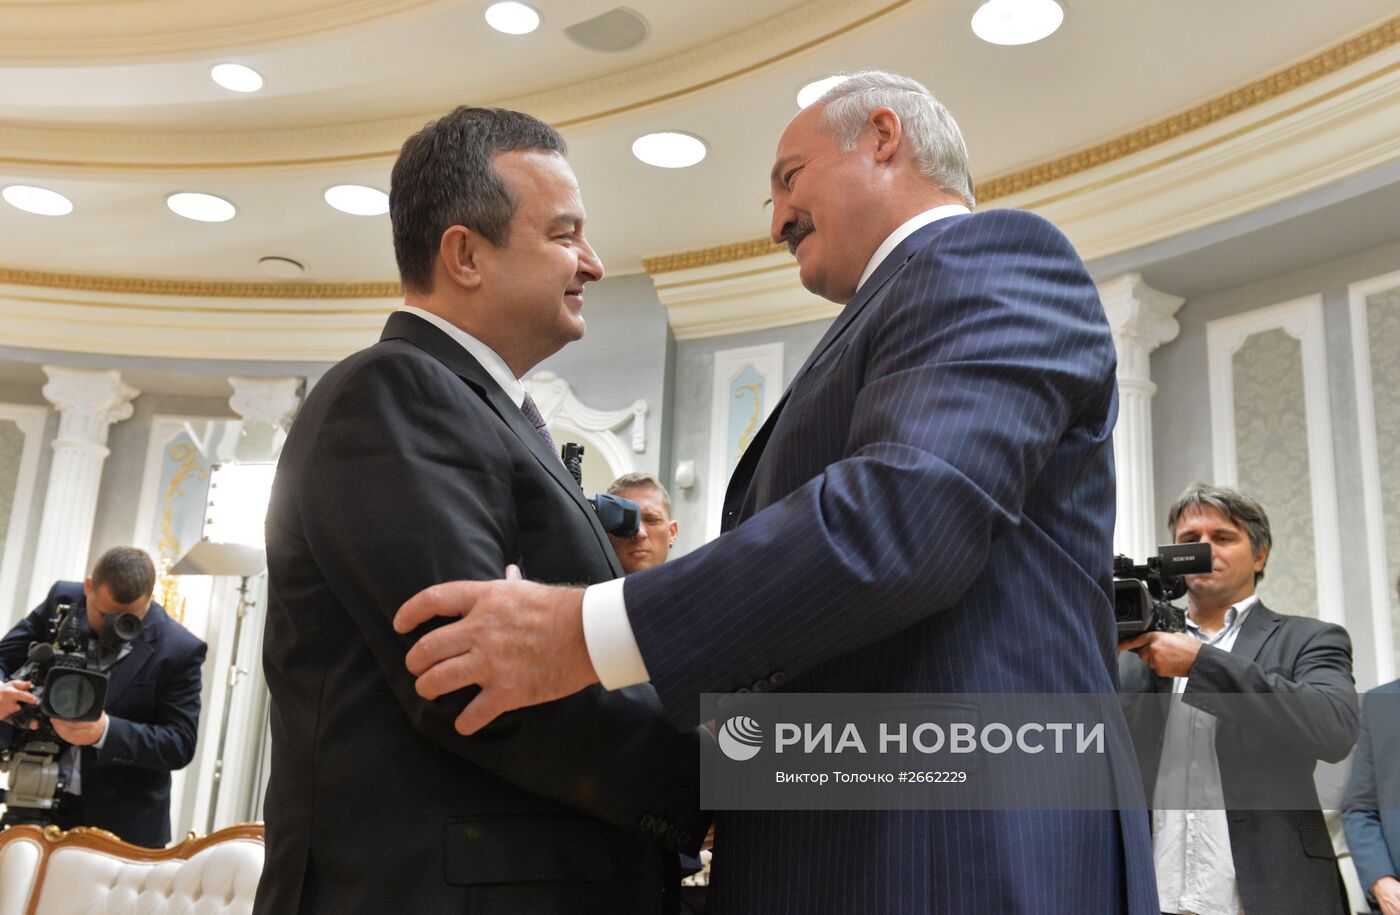 Встреча президента Белоруссии А.Лукашенко с председателем ОБСЕ И.Дачичем